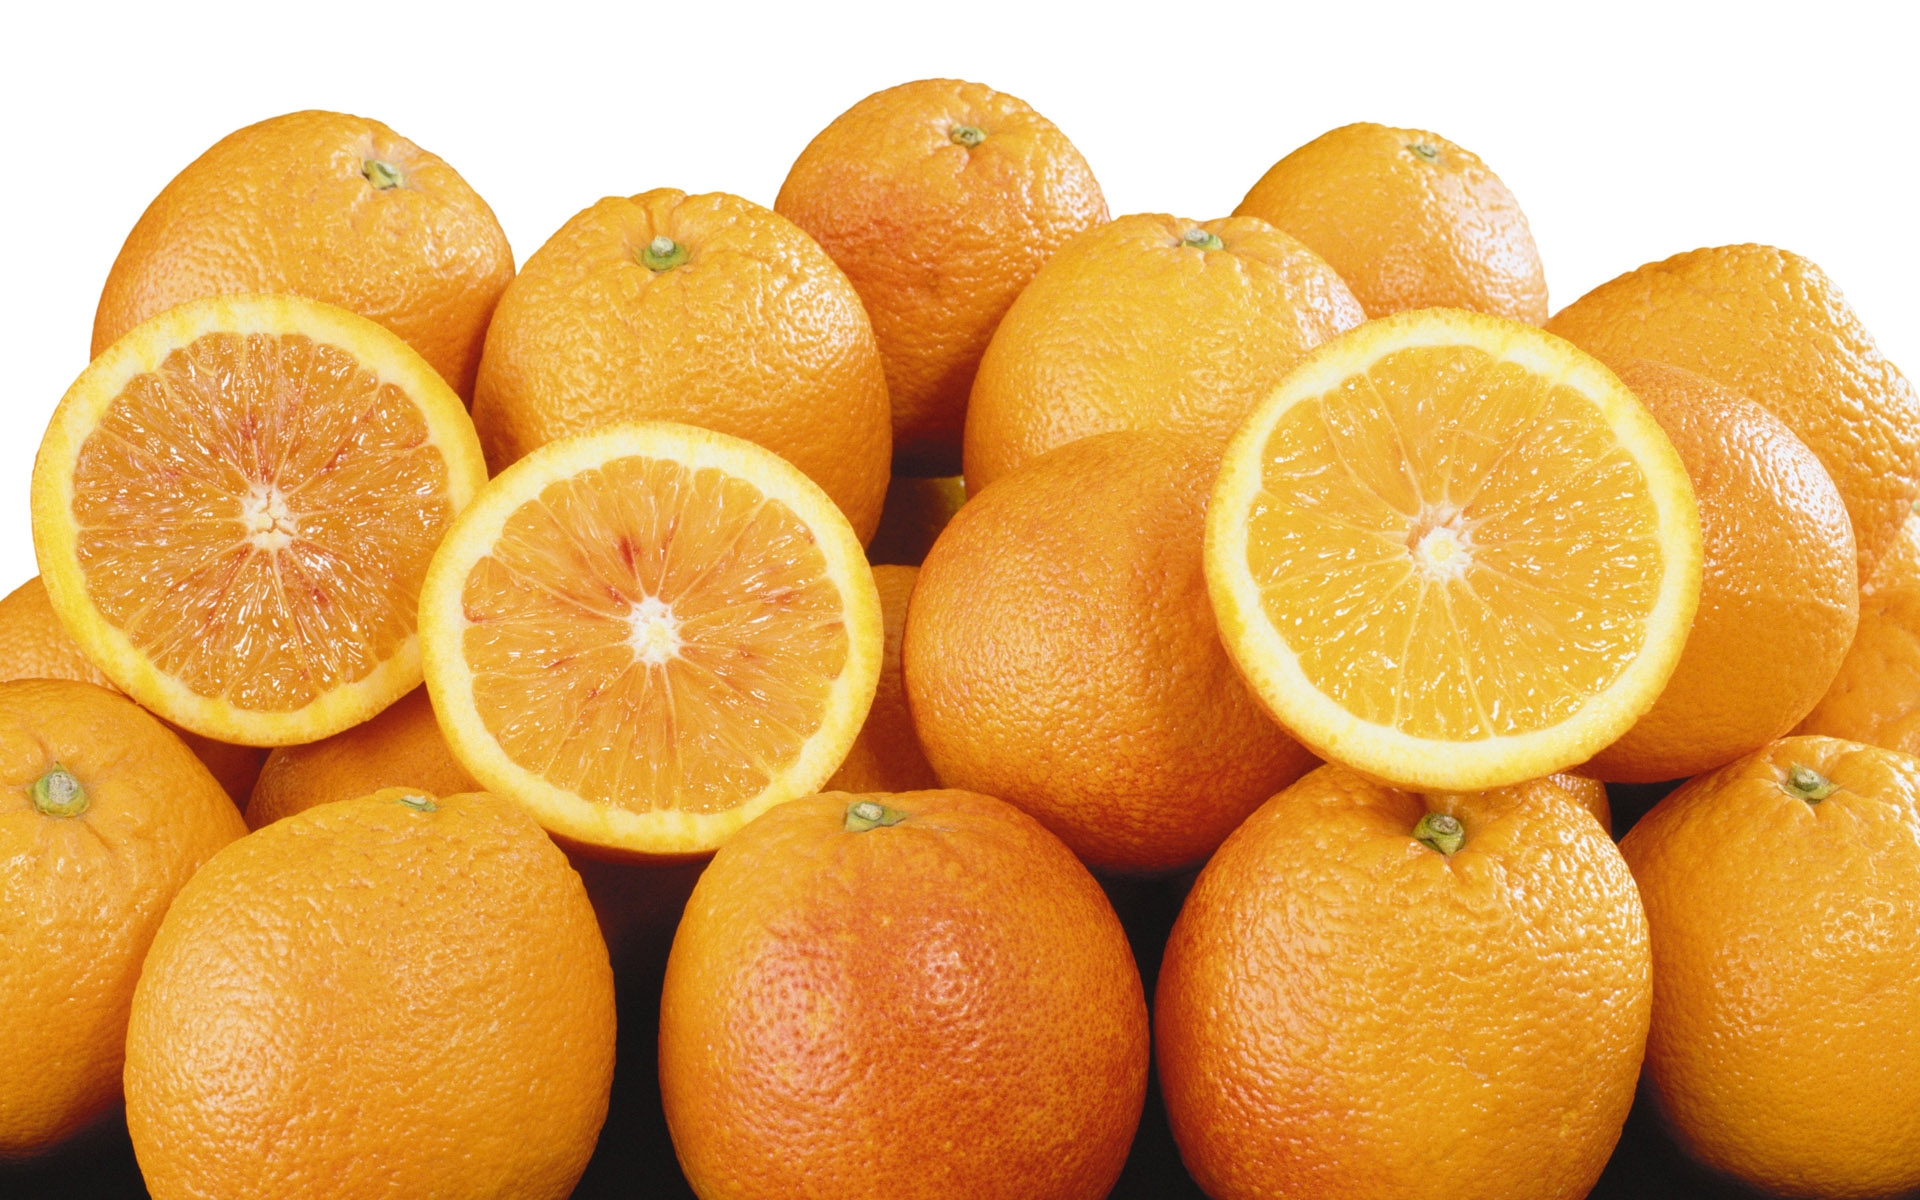 میوه های پاییزی - پرتقال